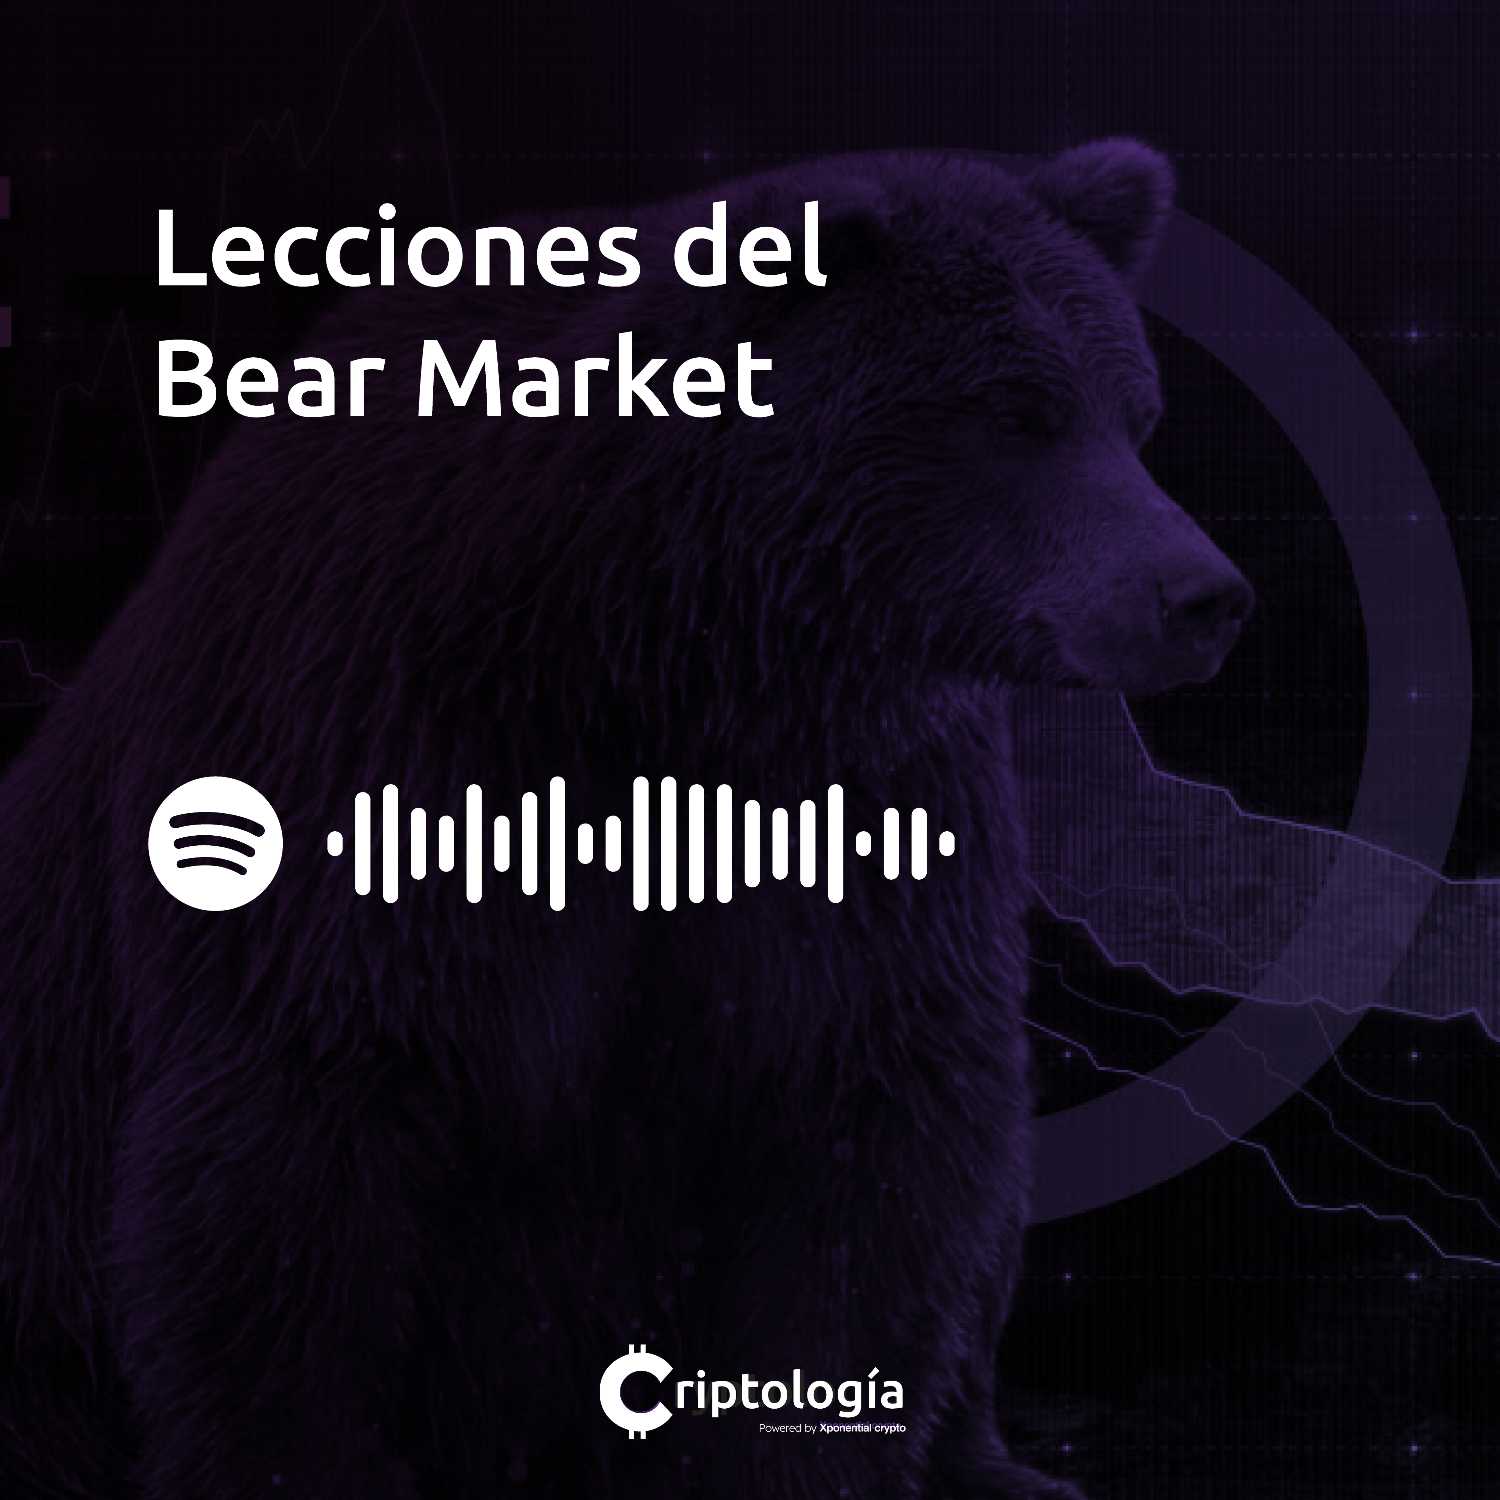 Lecciones del Bear Market